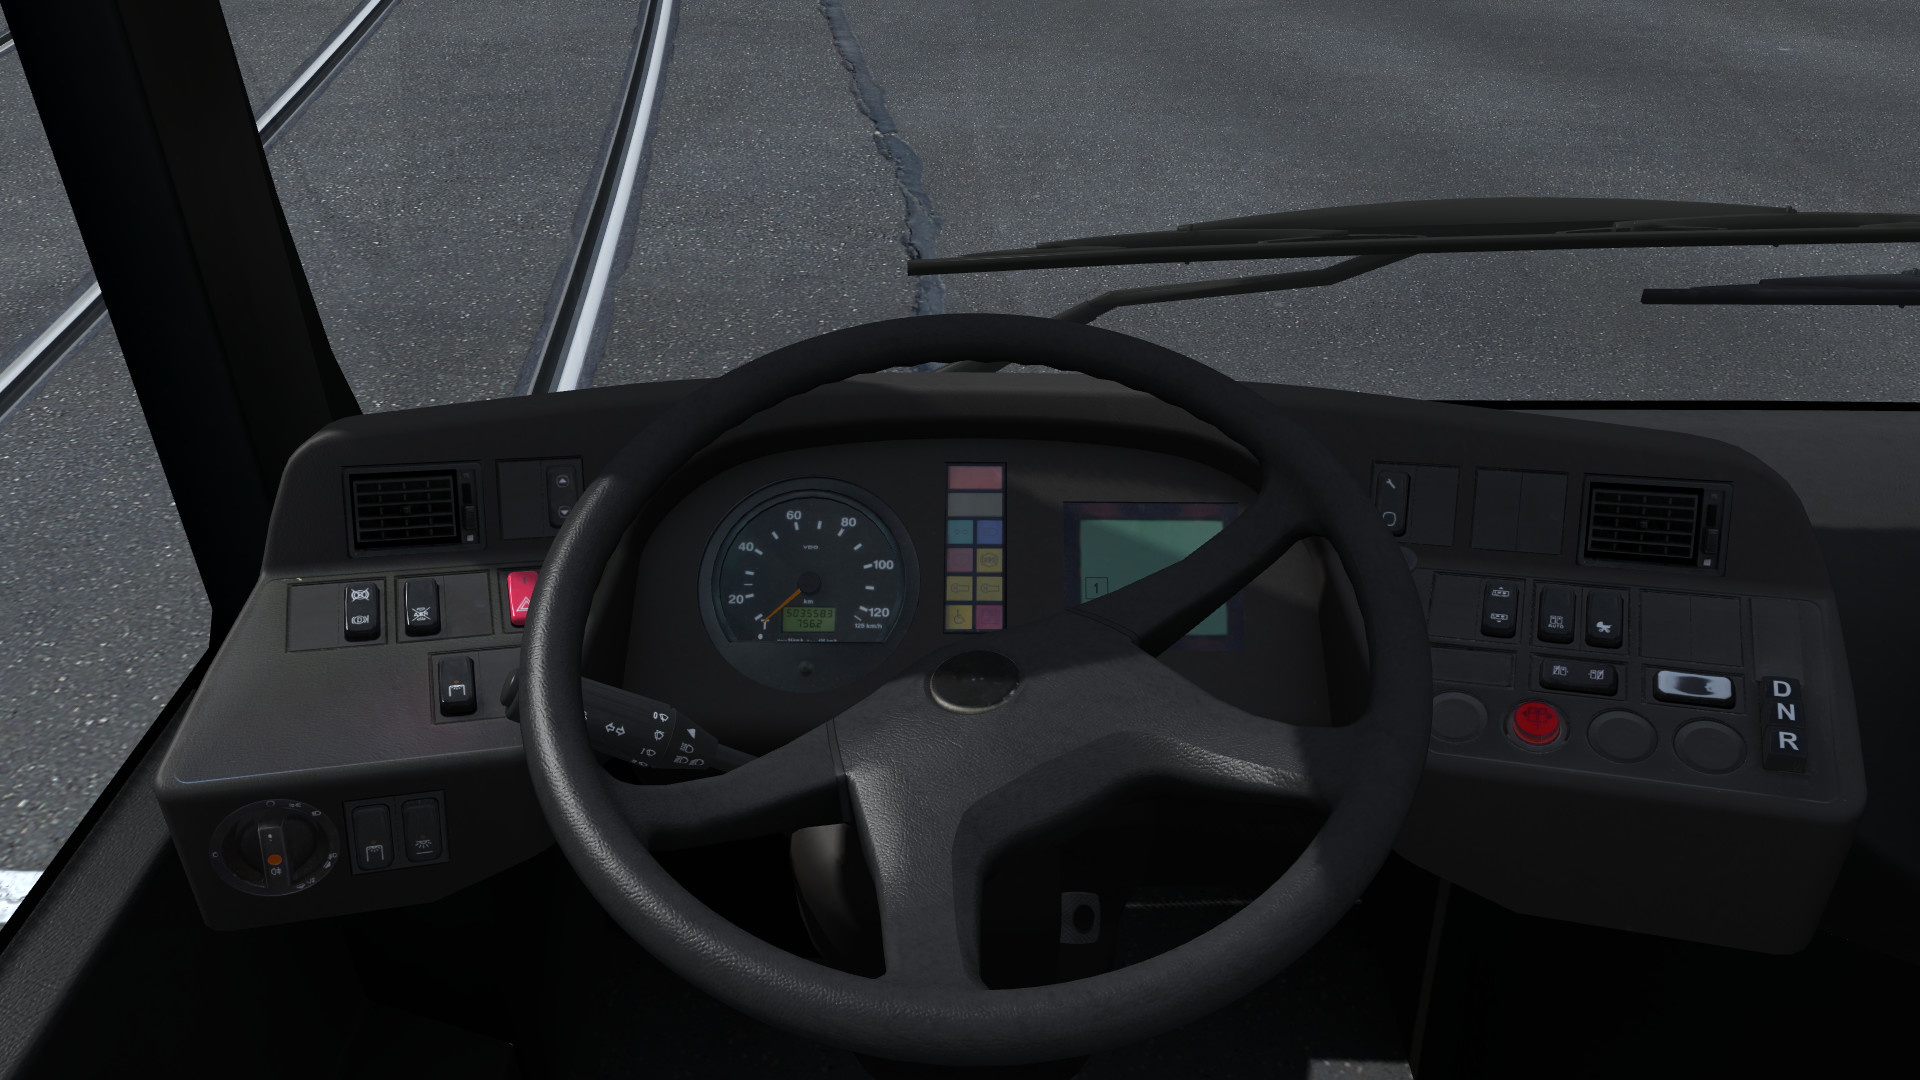 LOTUS-Simulator screenshot